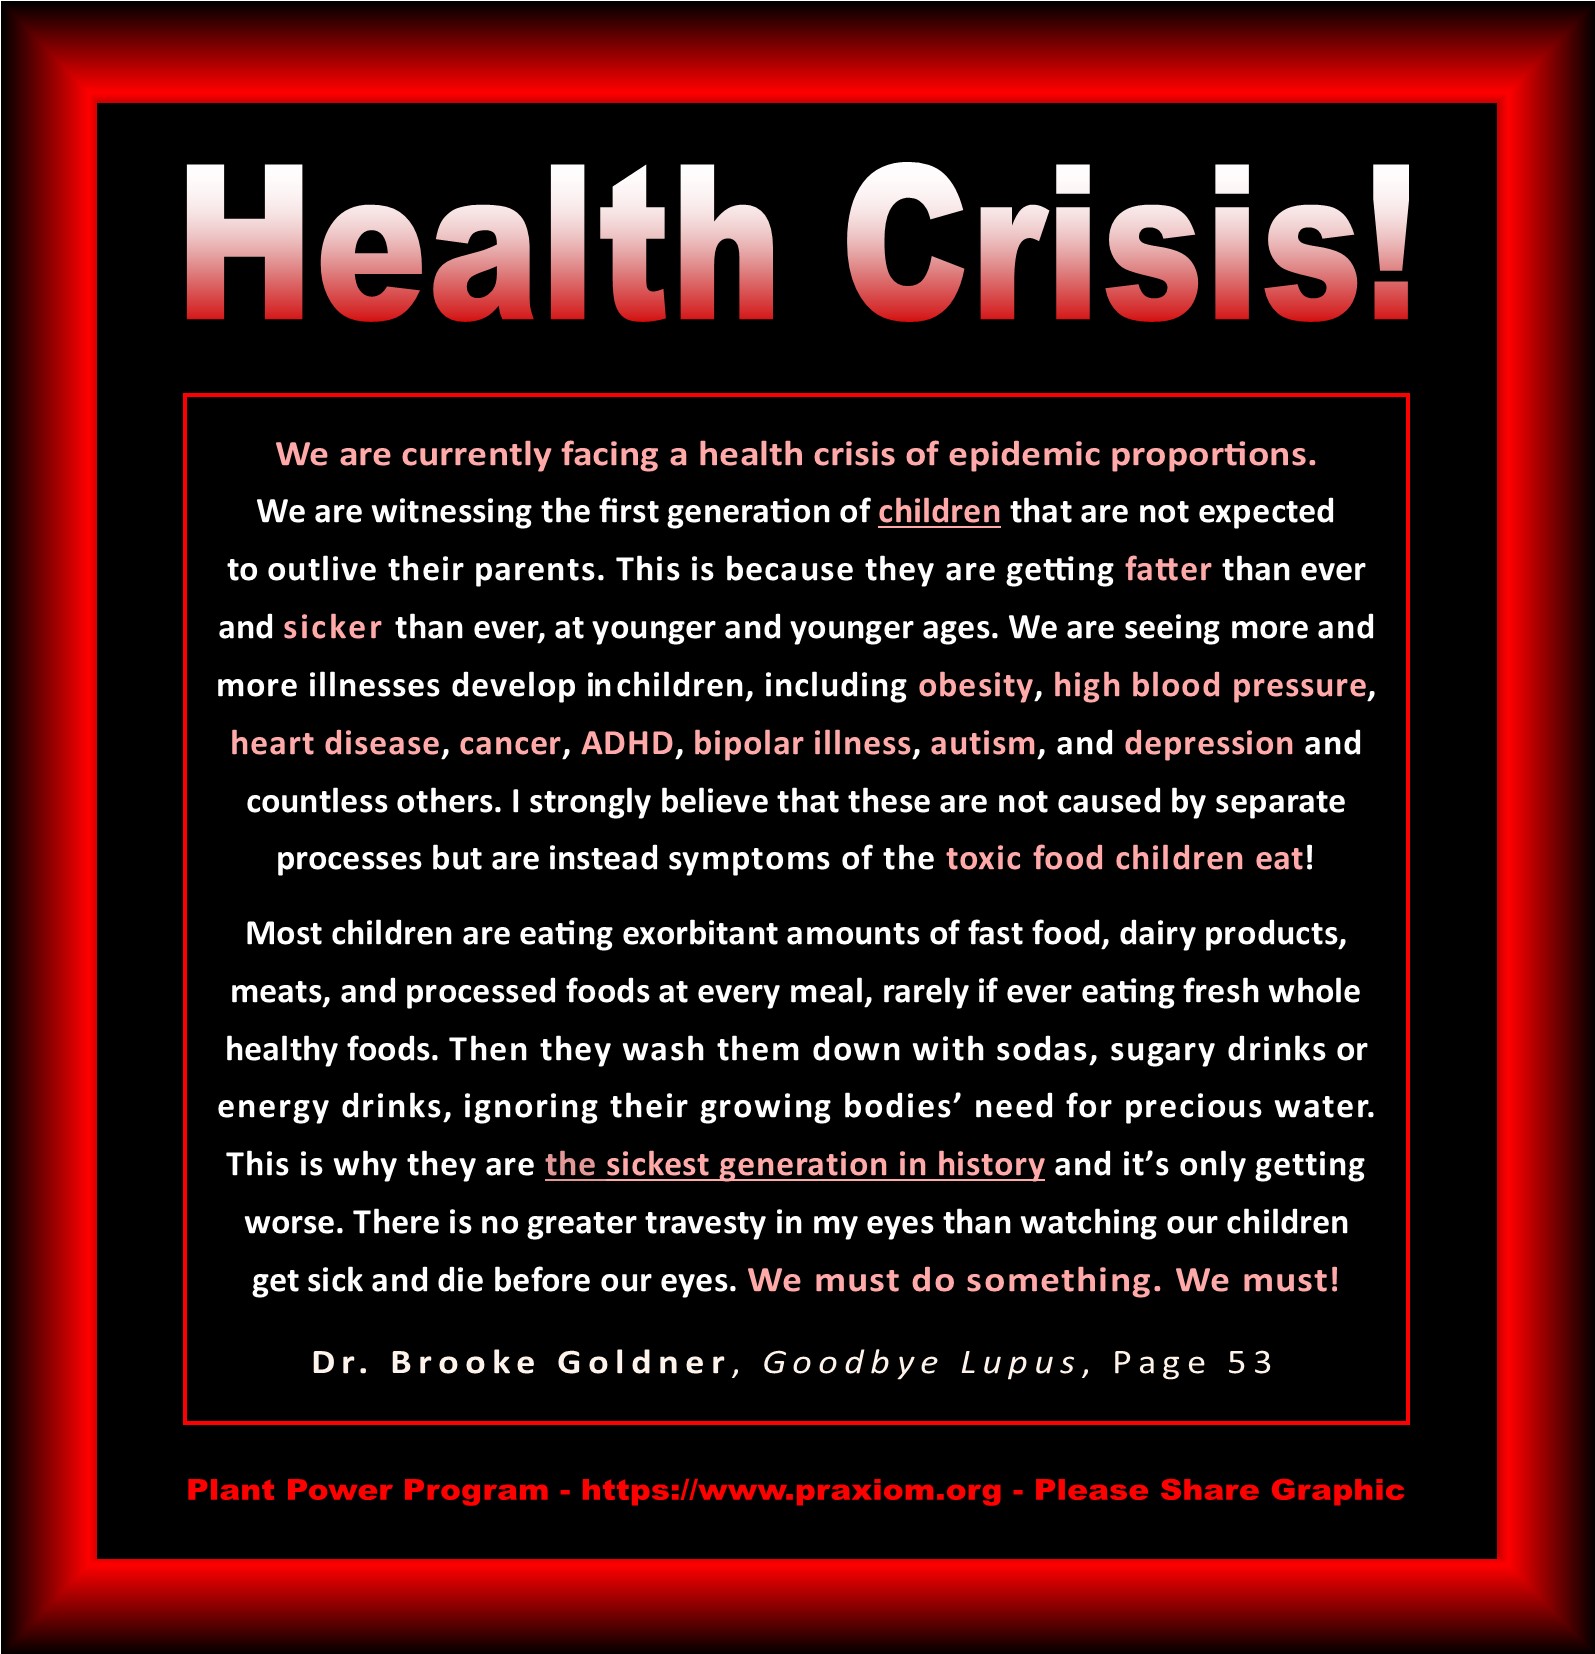 Health Crisis - Dr. Brooke Goldner